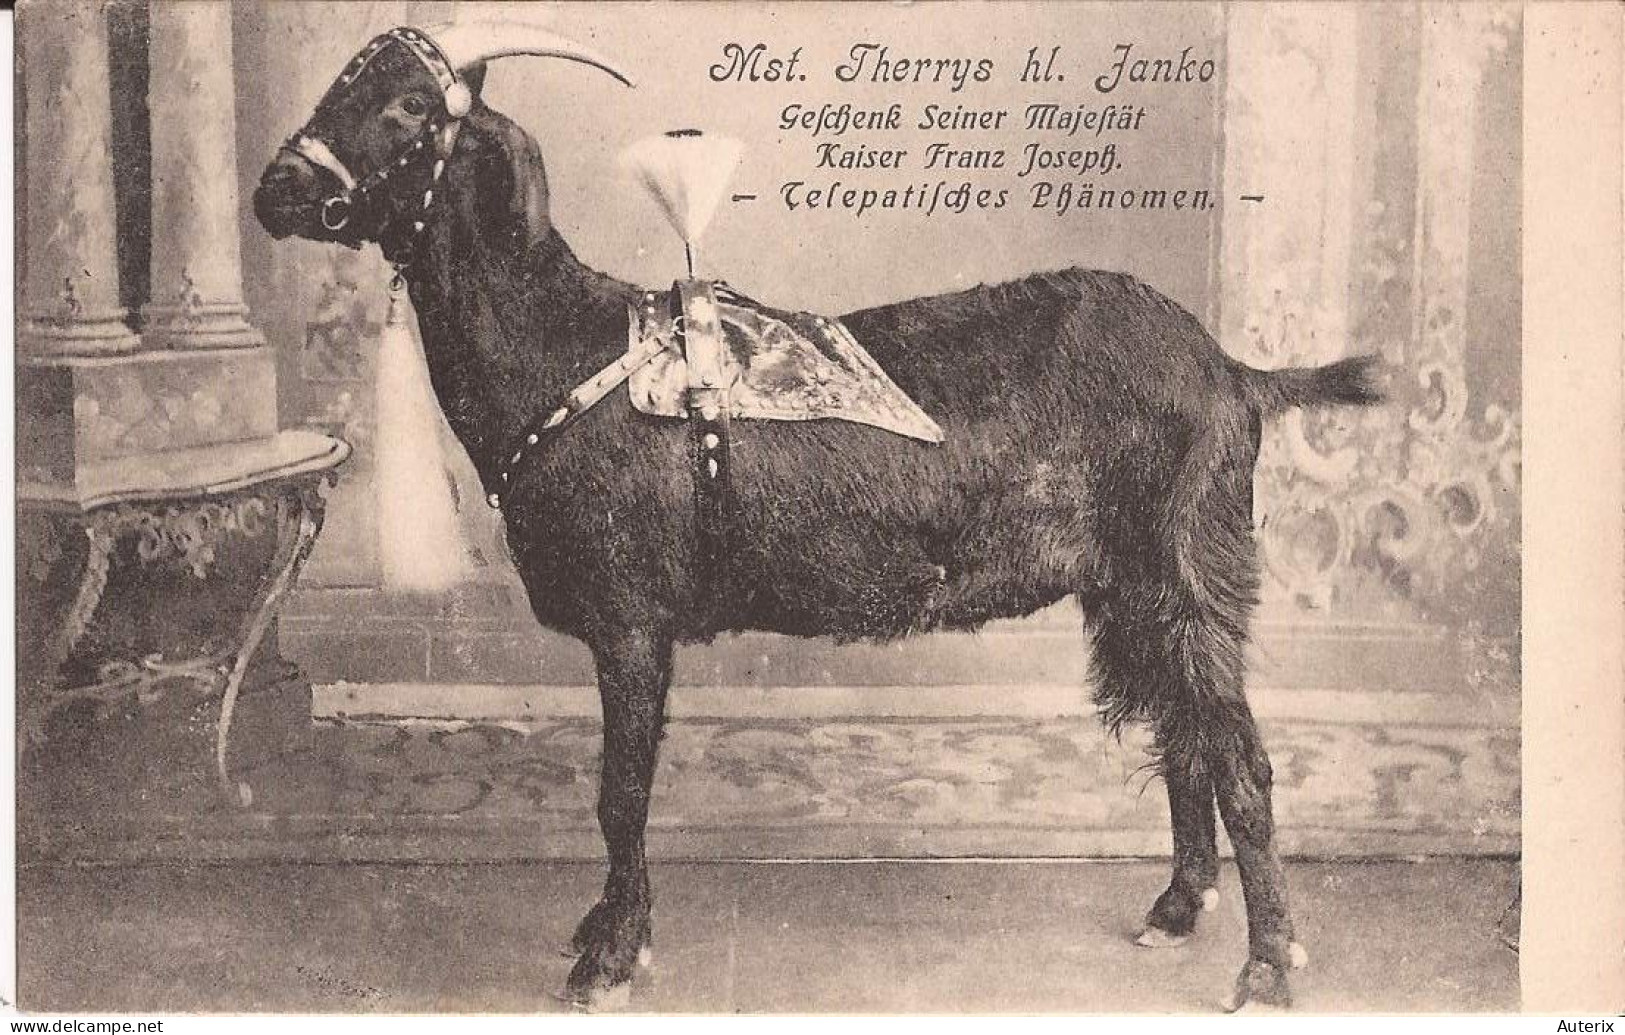 Allemagne - Mst. Therrys Hl. Fanko - Gefchenk Seiner Majeftät Kaiser Franz Joseph - Telepatifches Phänomen Goat - Astrología